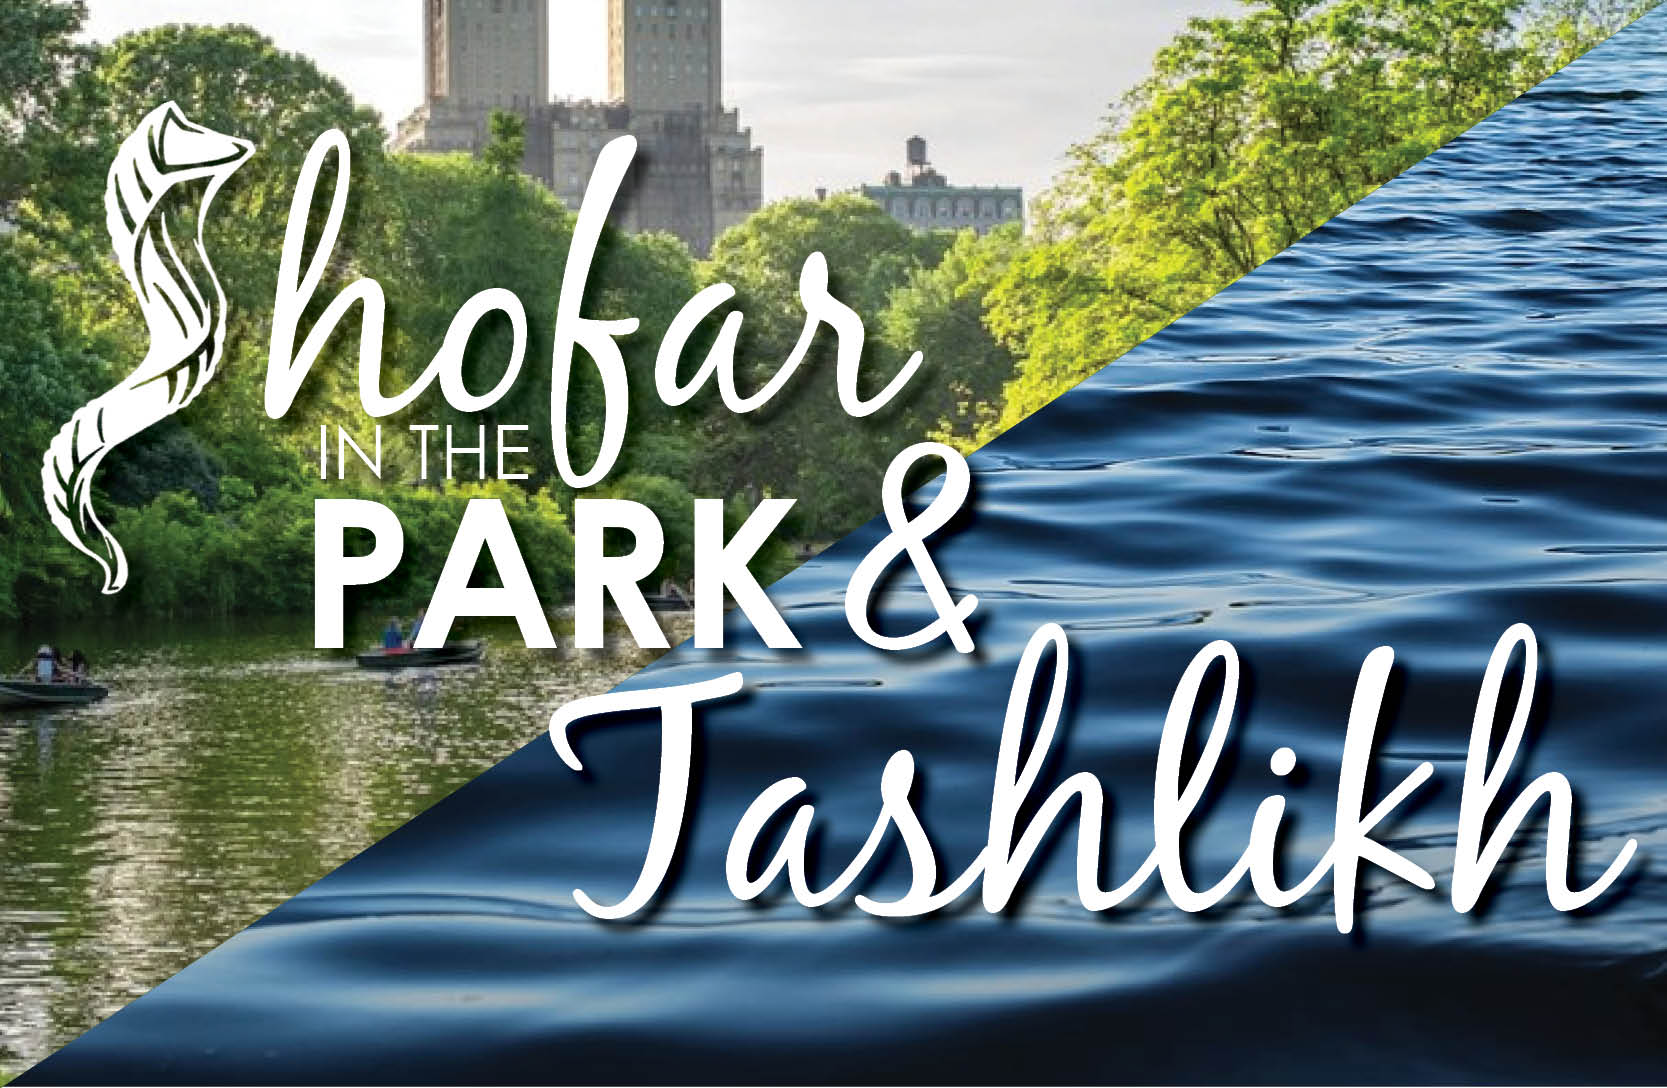 Shofar in the Park and Tashlikh-Central Park